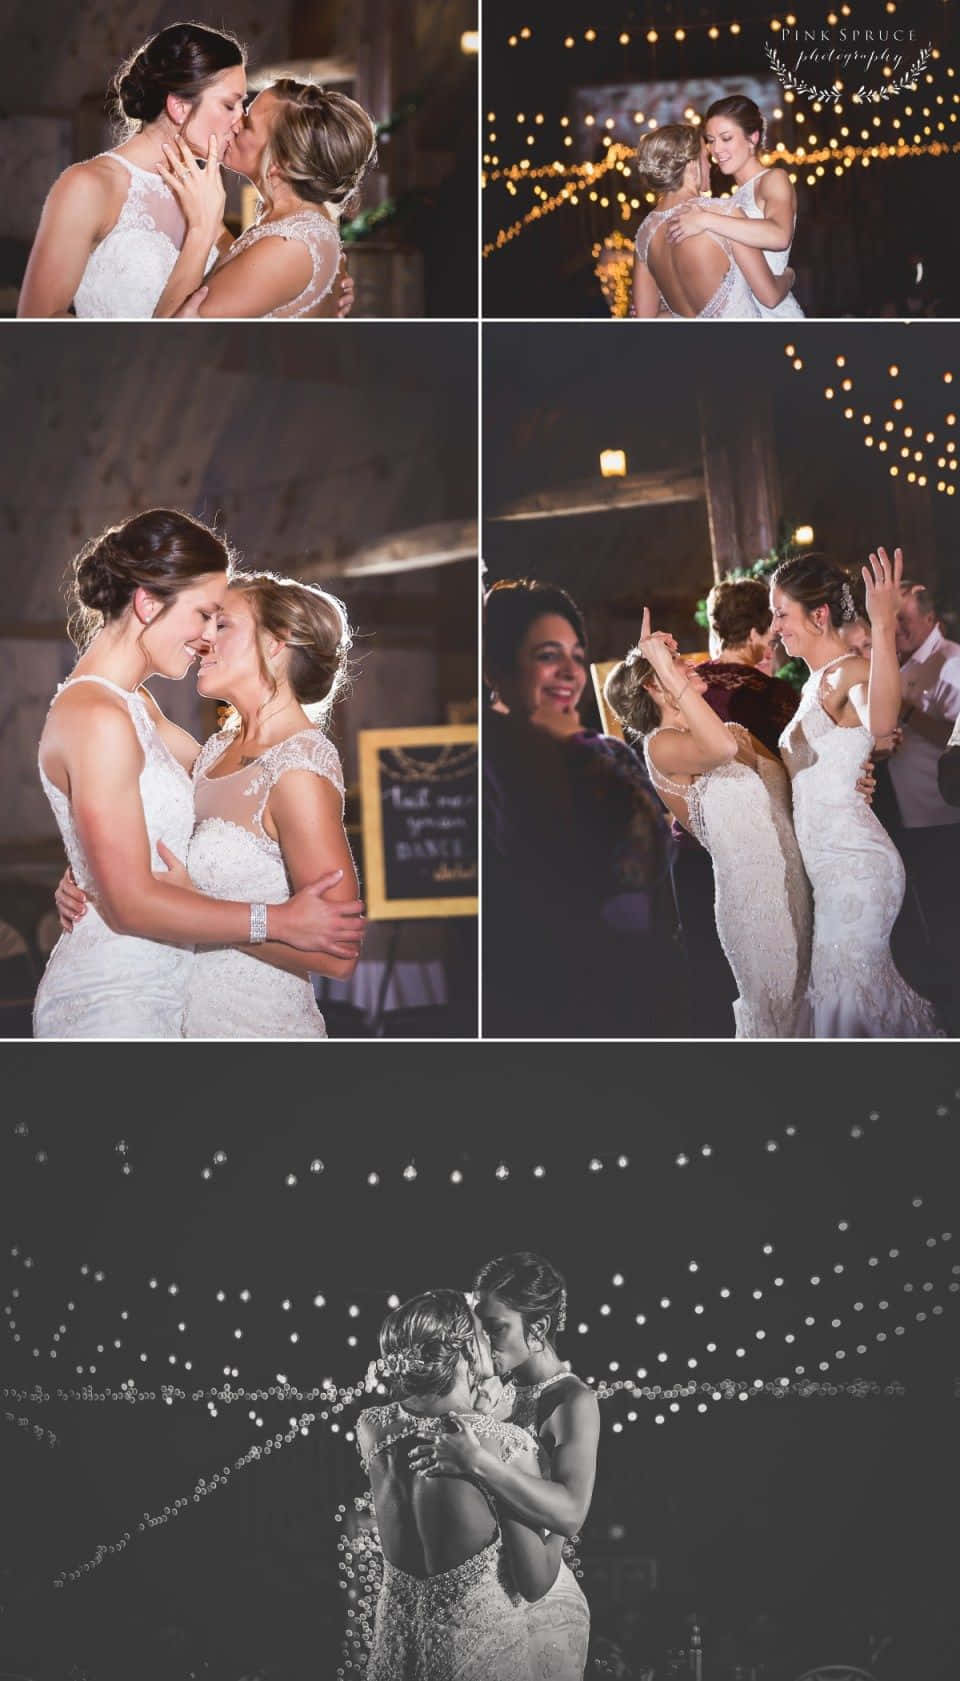 Einecollage Von Fotos Von Brautpaaren, Die Nachts Tanzen.